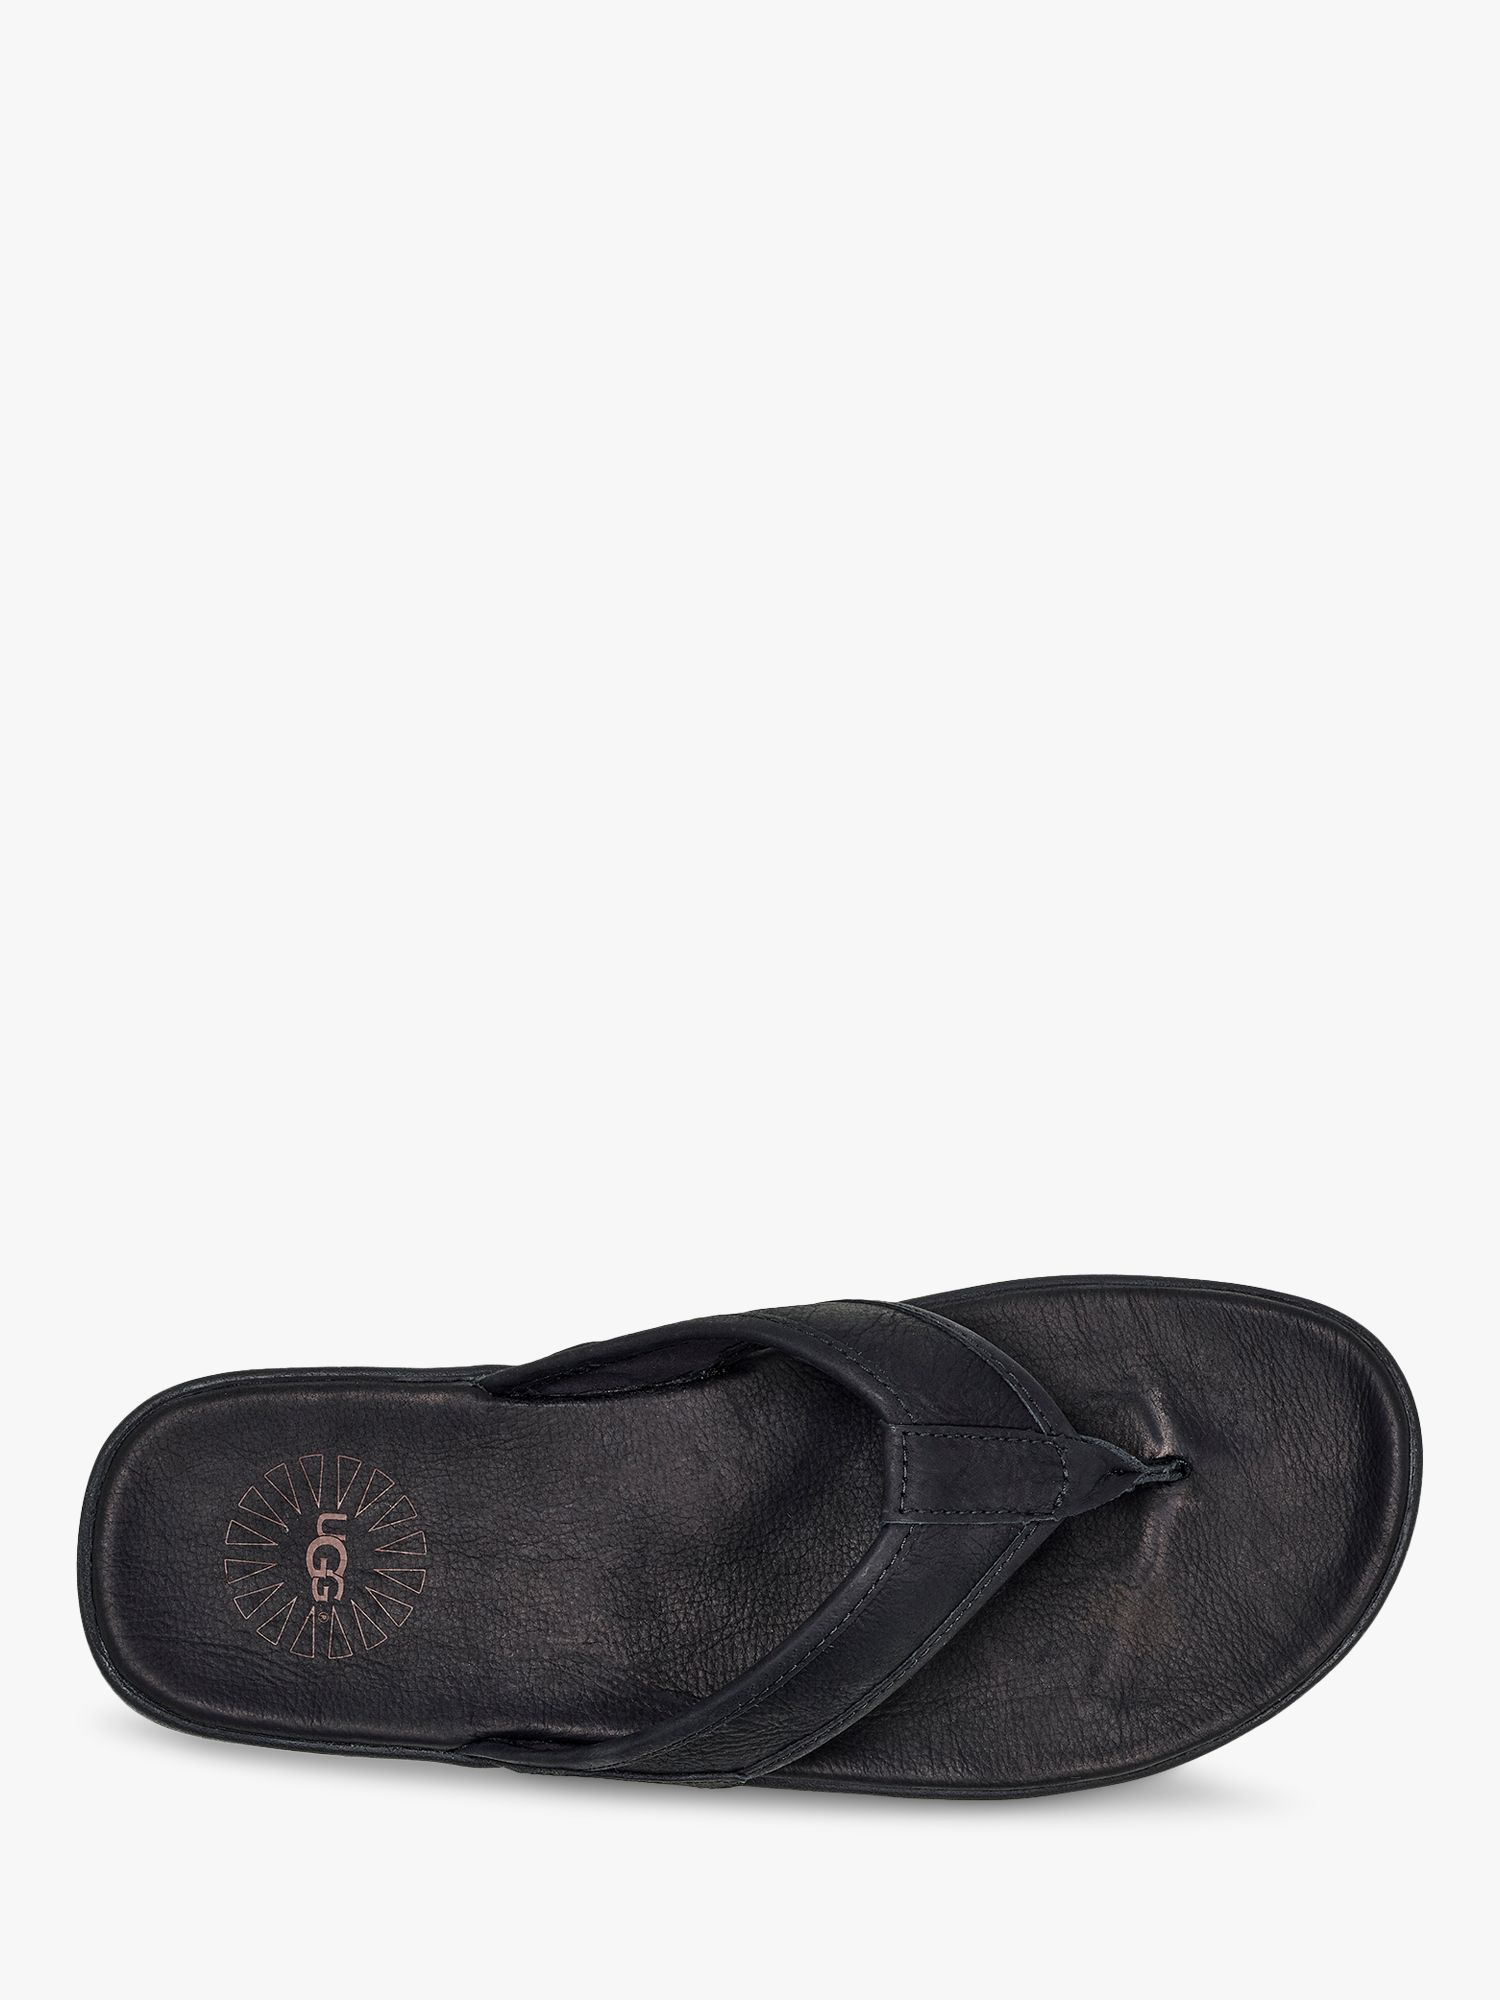 UGG Seaside Leather Flip Flops